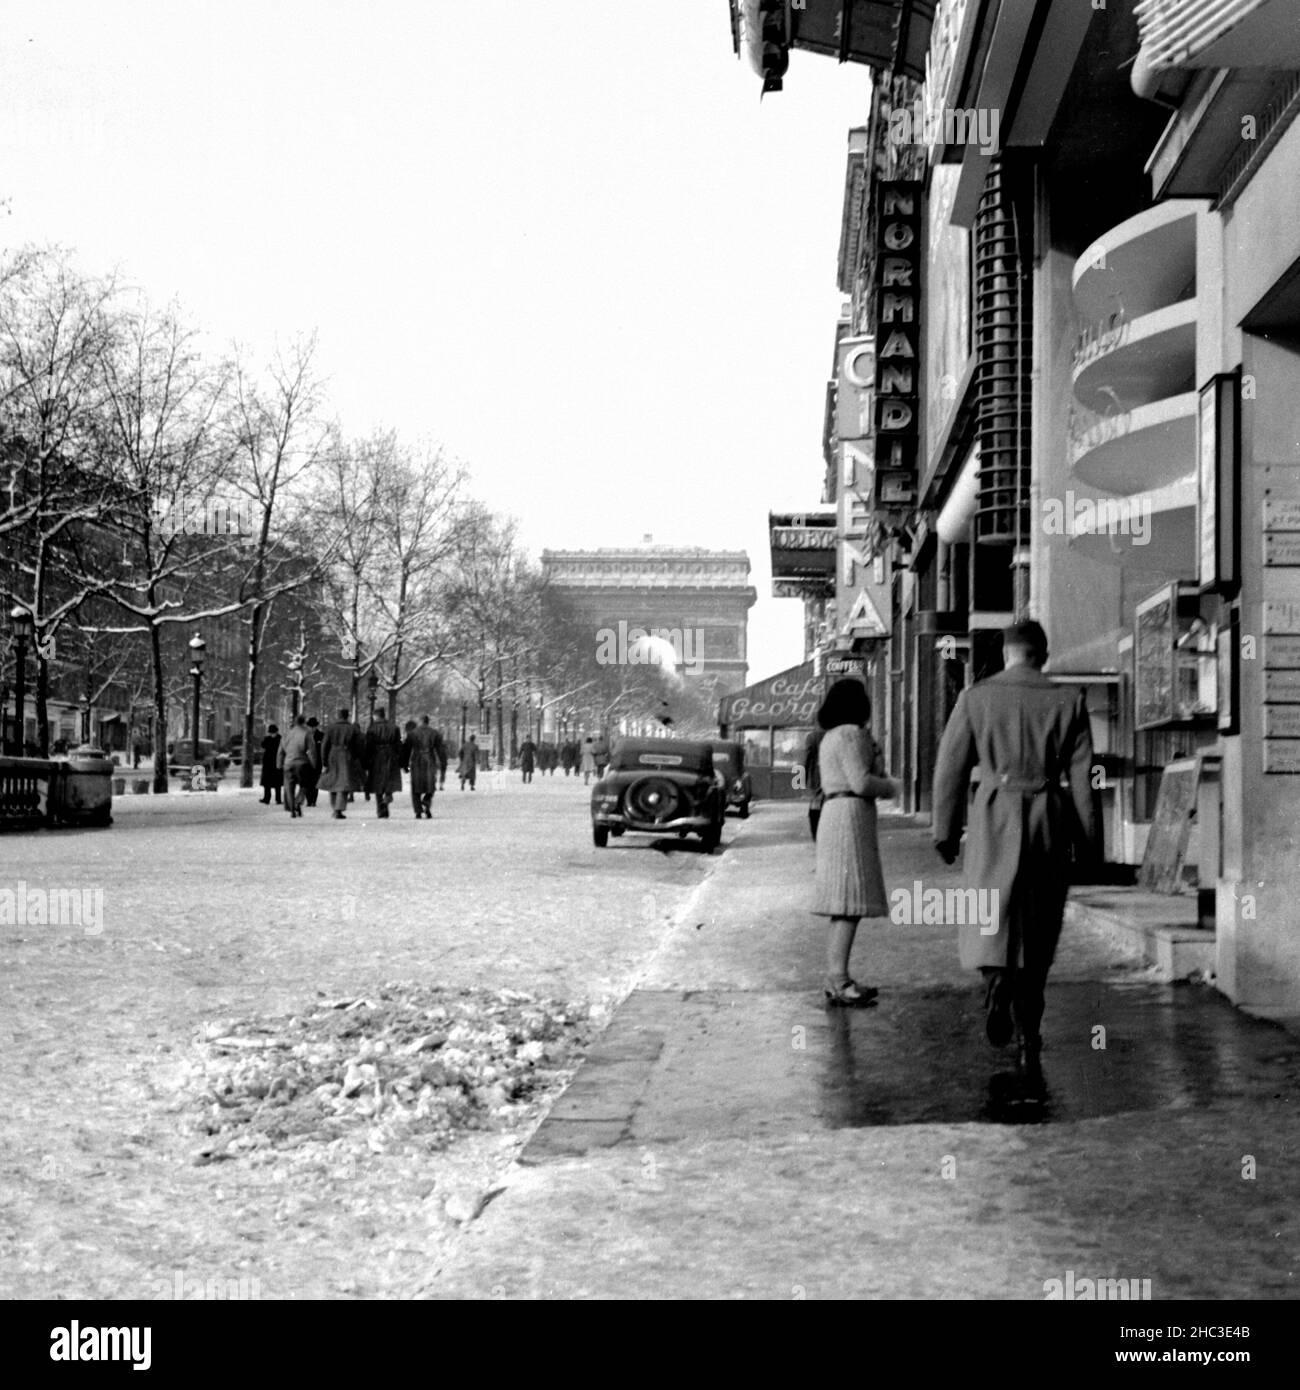 Paris Avenue des Champs-Elysees a Metro George V guardando verso l'Arco di Trionfo in inverno, 1945. Una delle due fotografie che raffigurano le persone che camminano e le imprese intorno alla metropolitana con la neve sul terreno. Non ci sono quasi veicoli in vista e le foto sono state scattate quando gli Champs-Elysees avevano ancora dei mediani alberati che restringevano il viale in una scala pedonale migliore. Molte delle persone fuori sono in uniforme militare. Le aziende raffigurate lungo il lato nord-est del viale includono il Café George V, il Normandie, Milady, Lord Byron e il cinema. Gli alberi sono pieni di neve. Foto Stock